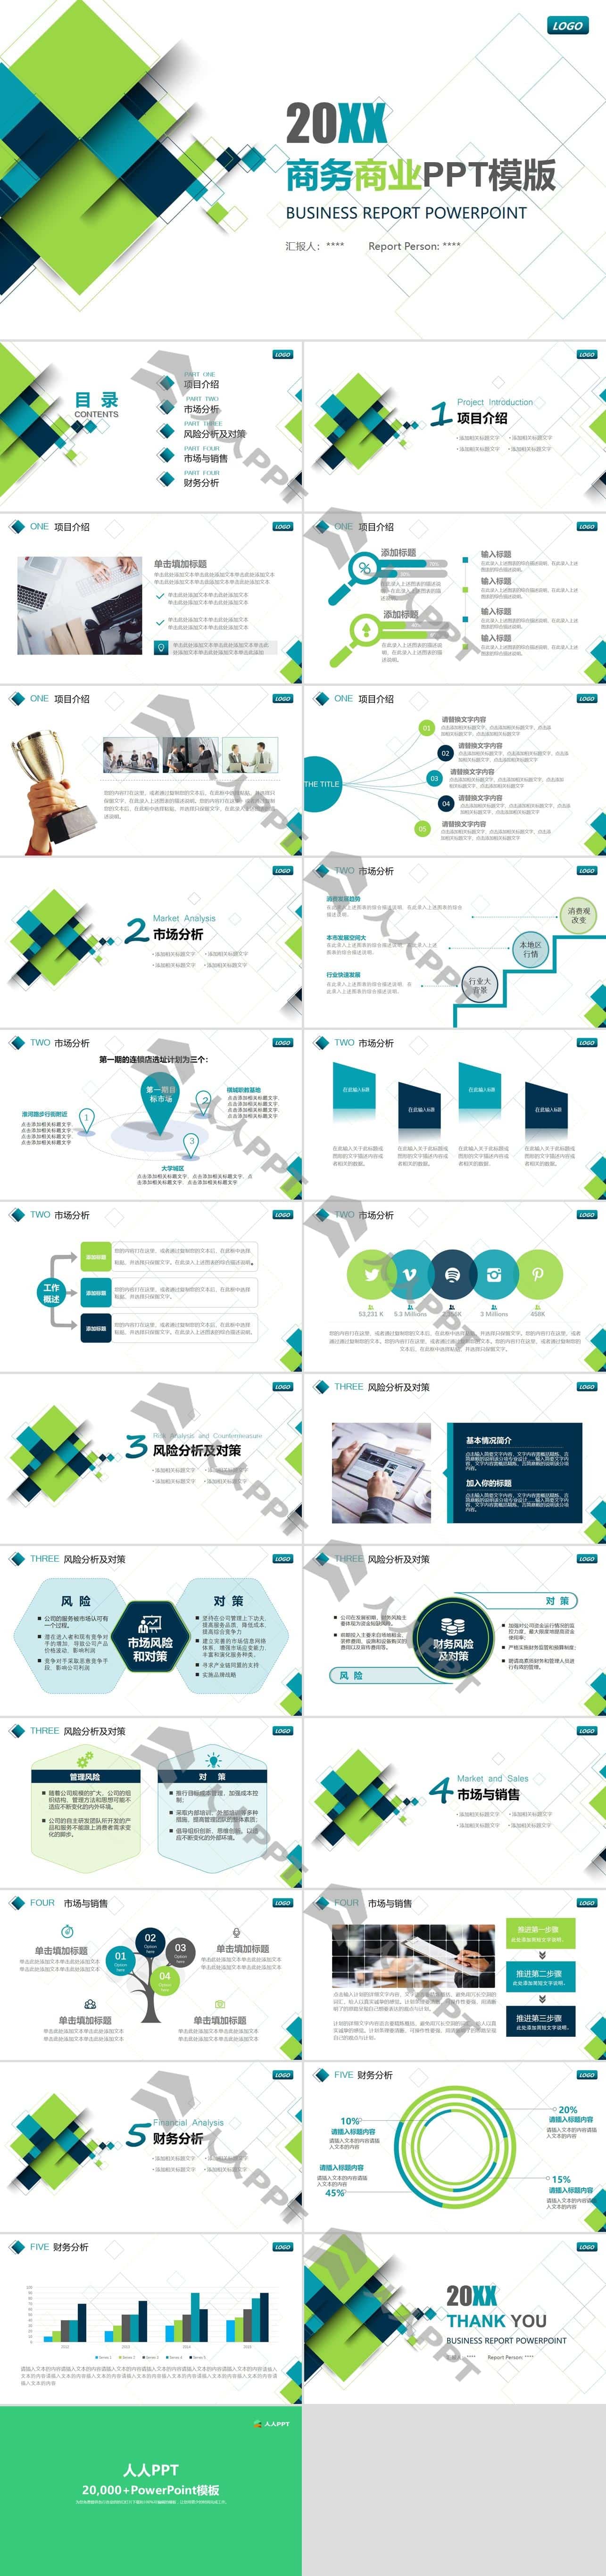 蓝色正方形创意设计商业PPT模板长图